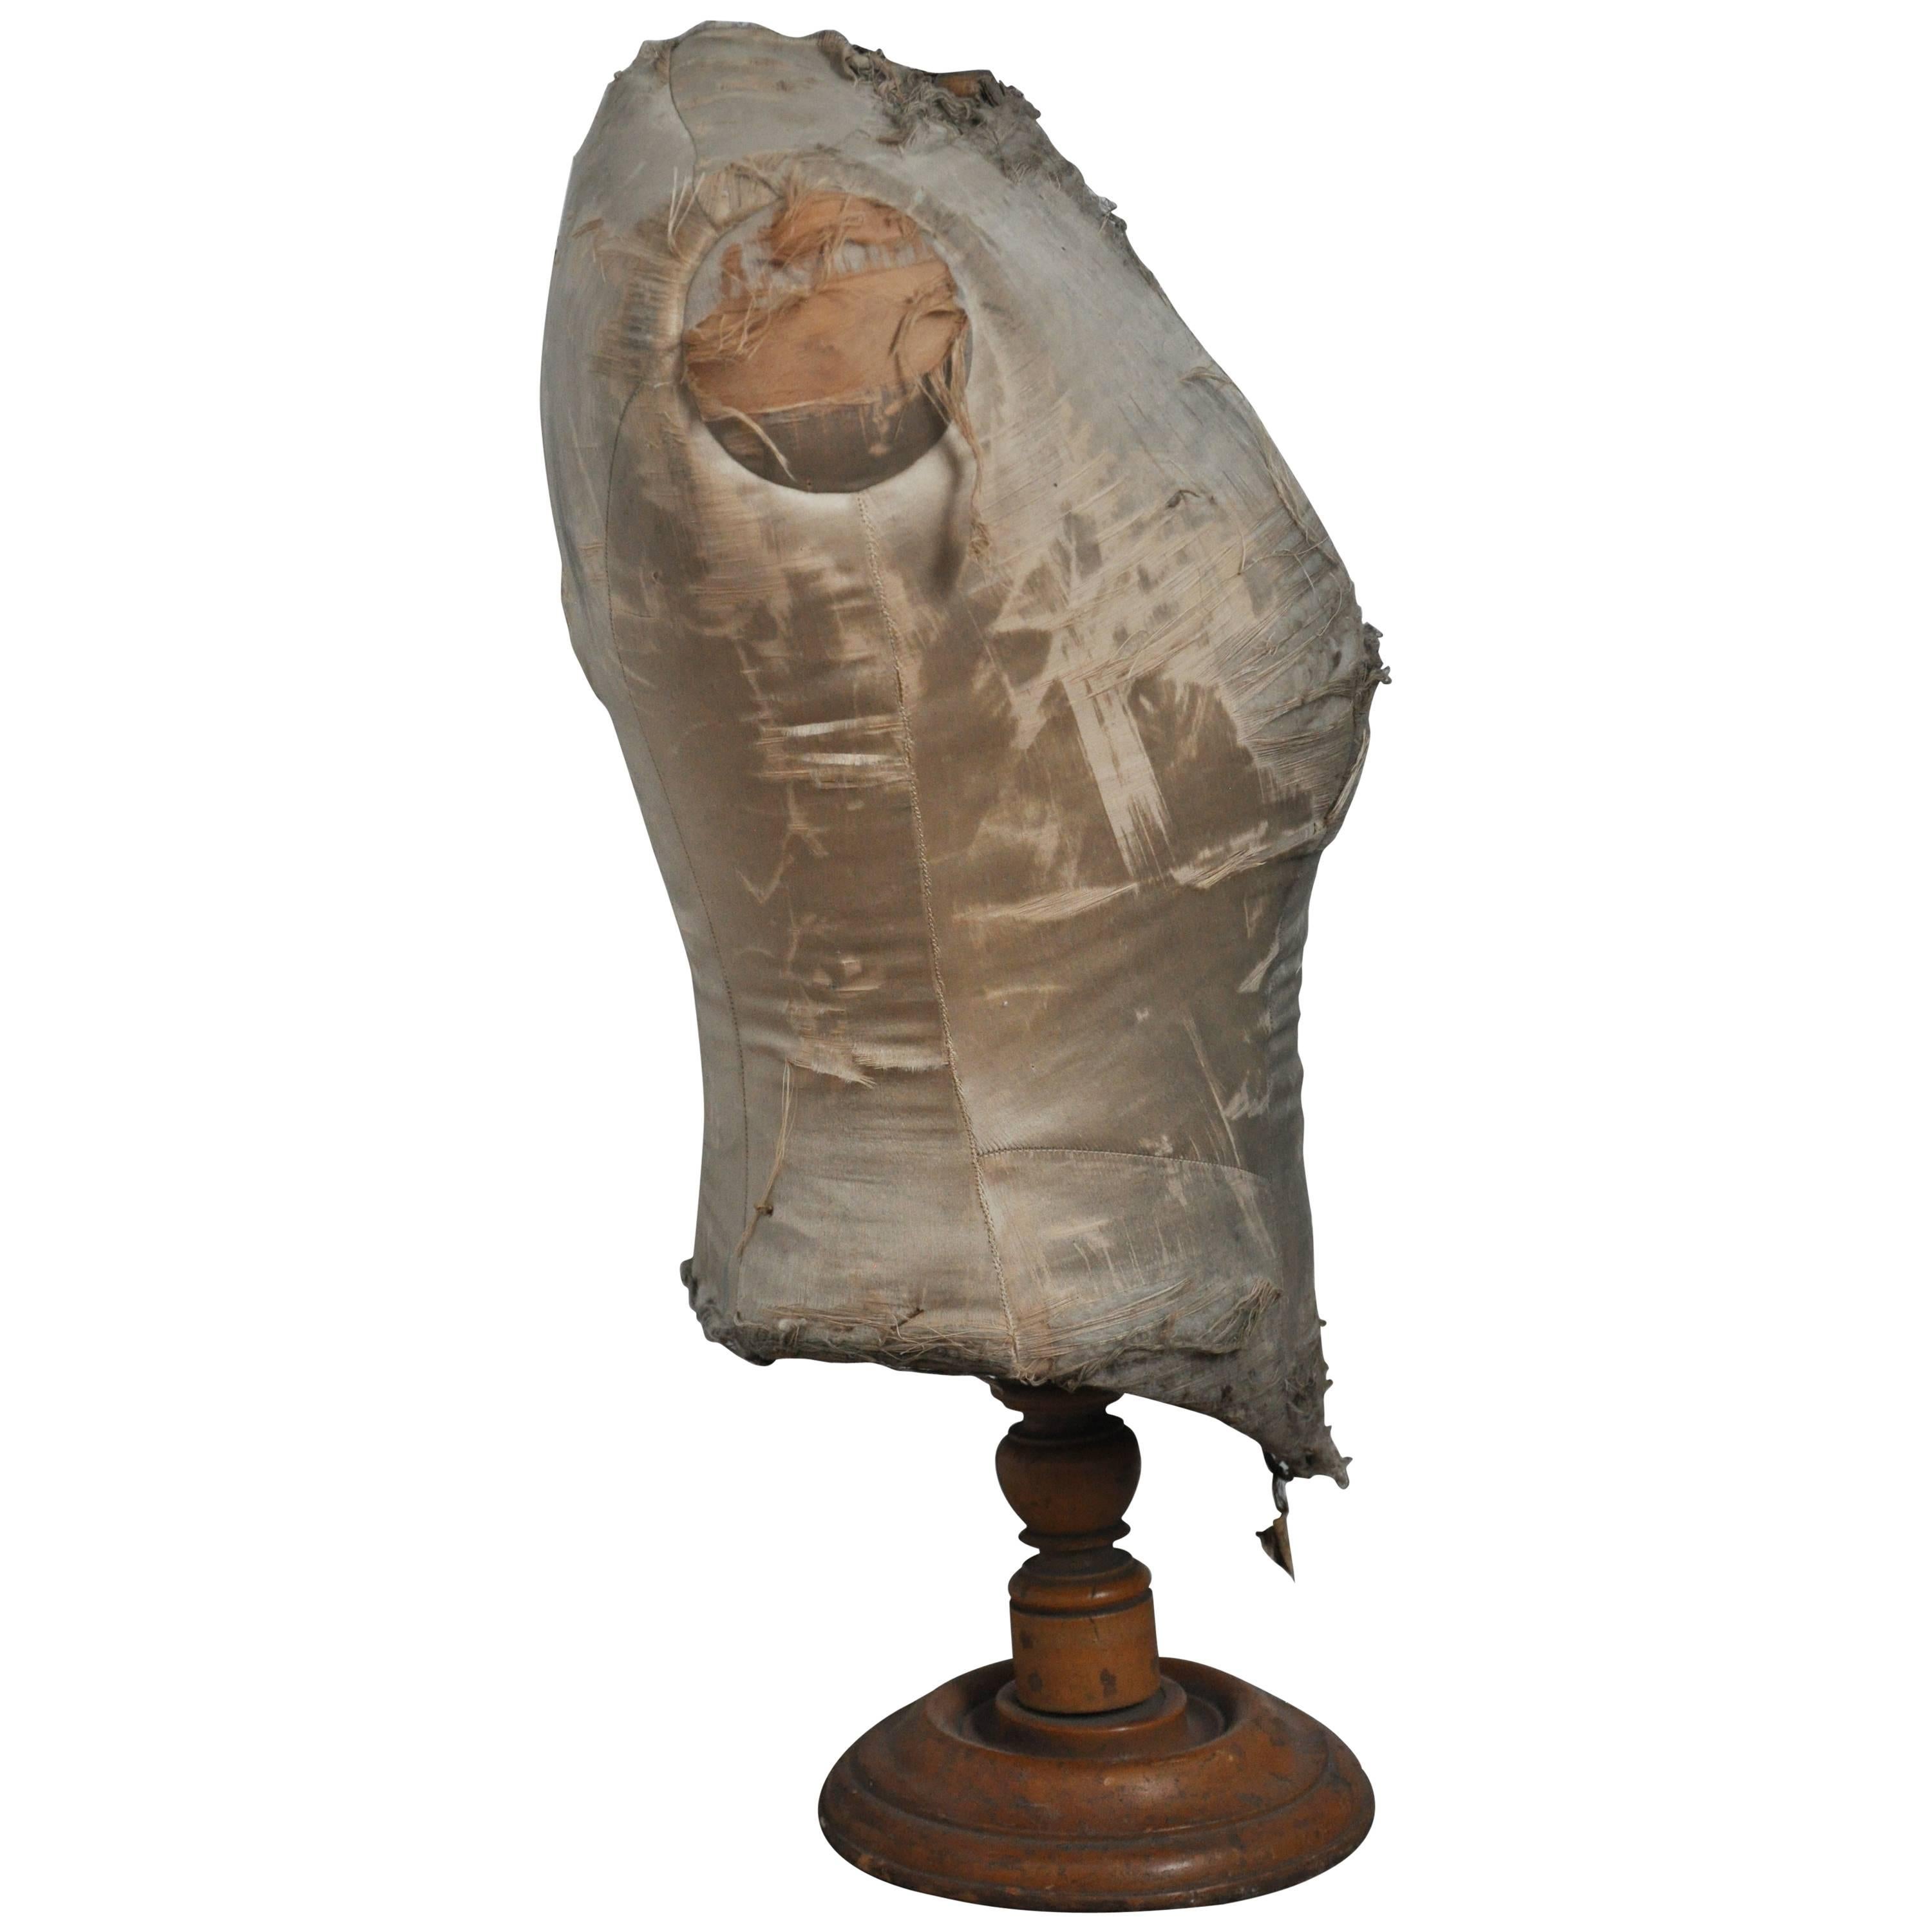 Buste en tissu français de la fin du XIXe siècle. 
Ce buste antique trouvé à Paris était une vitrine de magasin et est maintenant un objet fantastique avec une patine riche et magnifique. 
Piétement en bois tourné et tapisserie d'origine en lin,